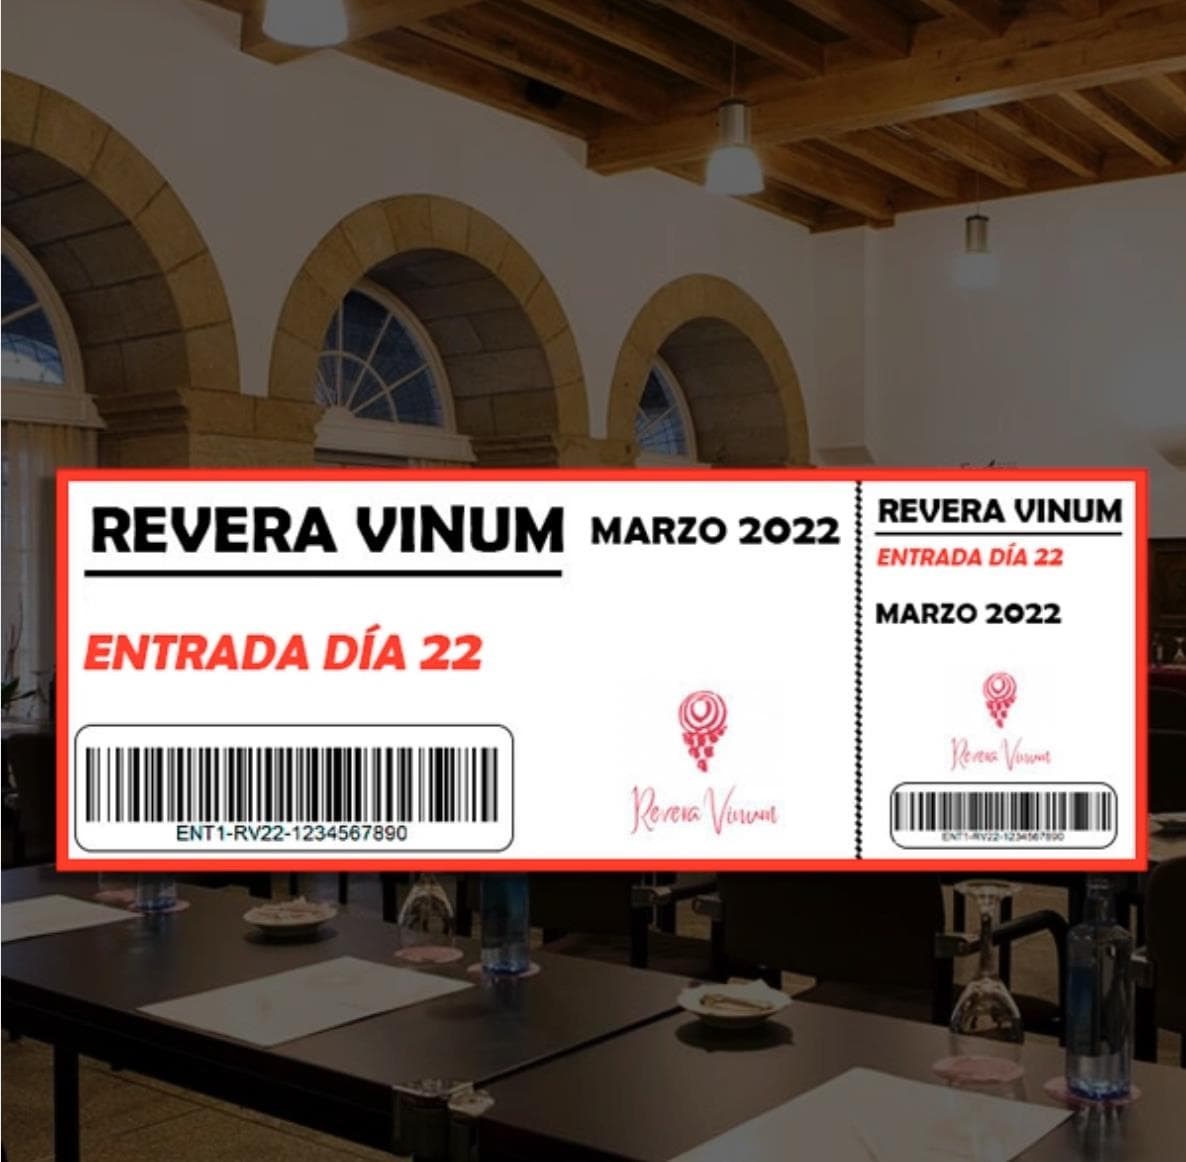 VENDA DE ENTRADAS | REVERA VINUM 2022 - Imagen 5